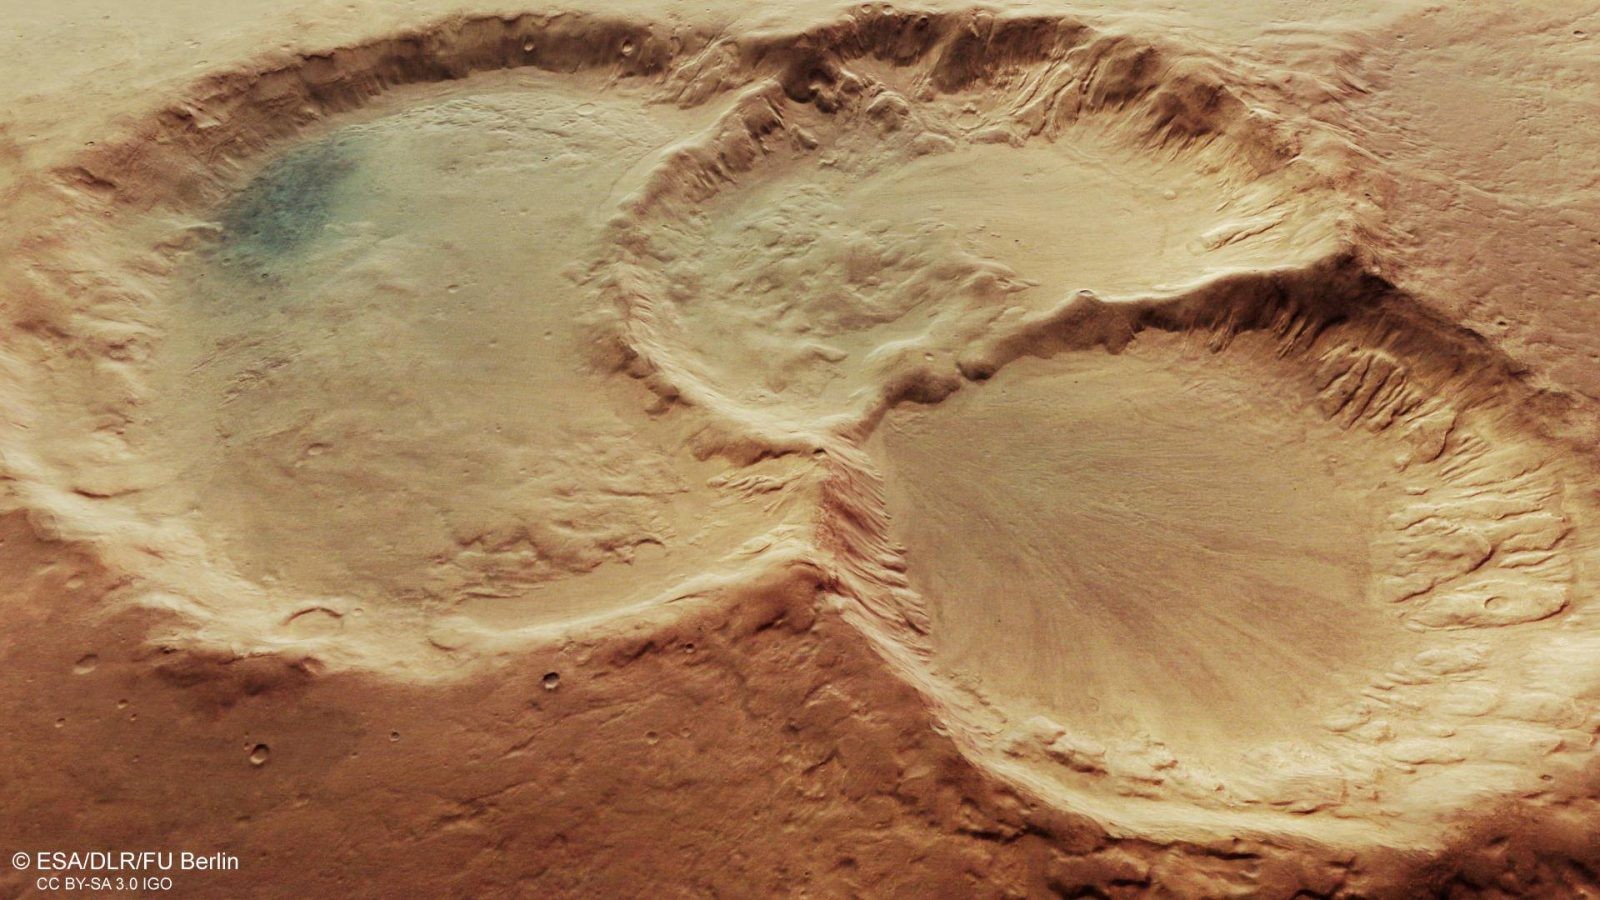 Na Czerwonej Planecie uformował się potrójny krater. Niesamowite zdjęcia od ESA